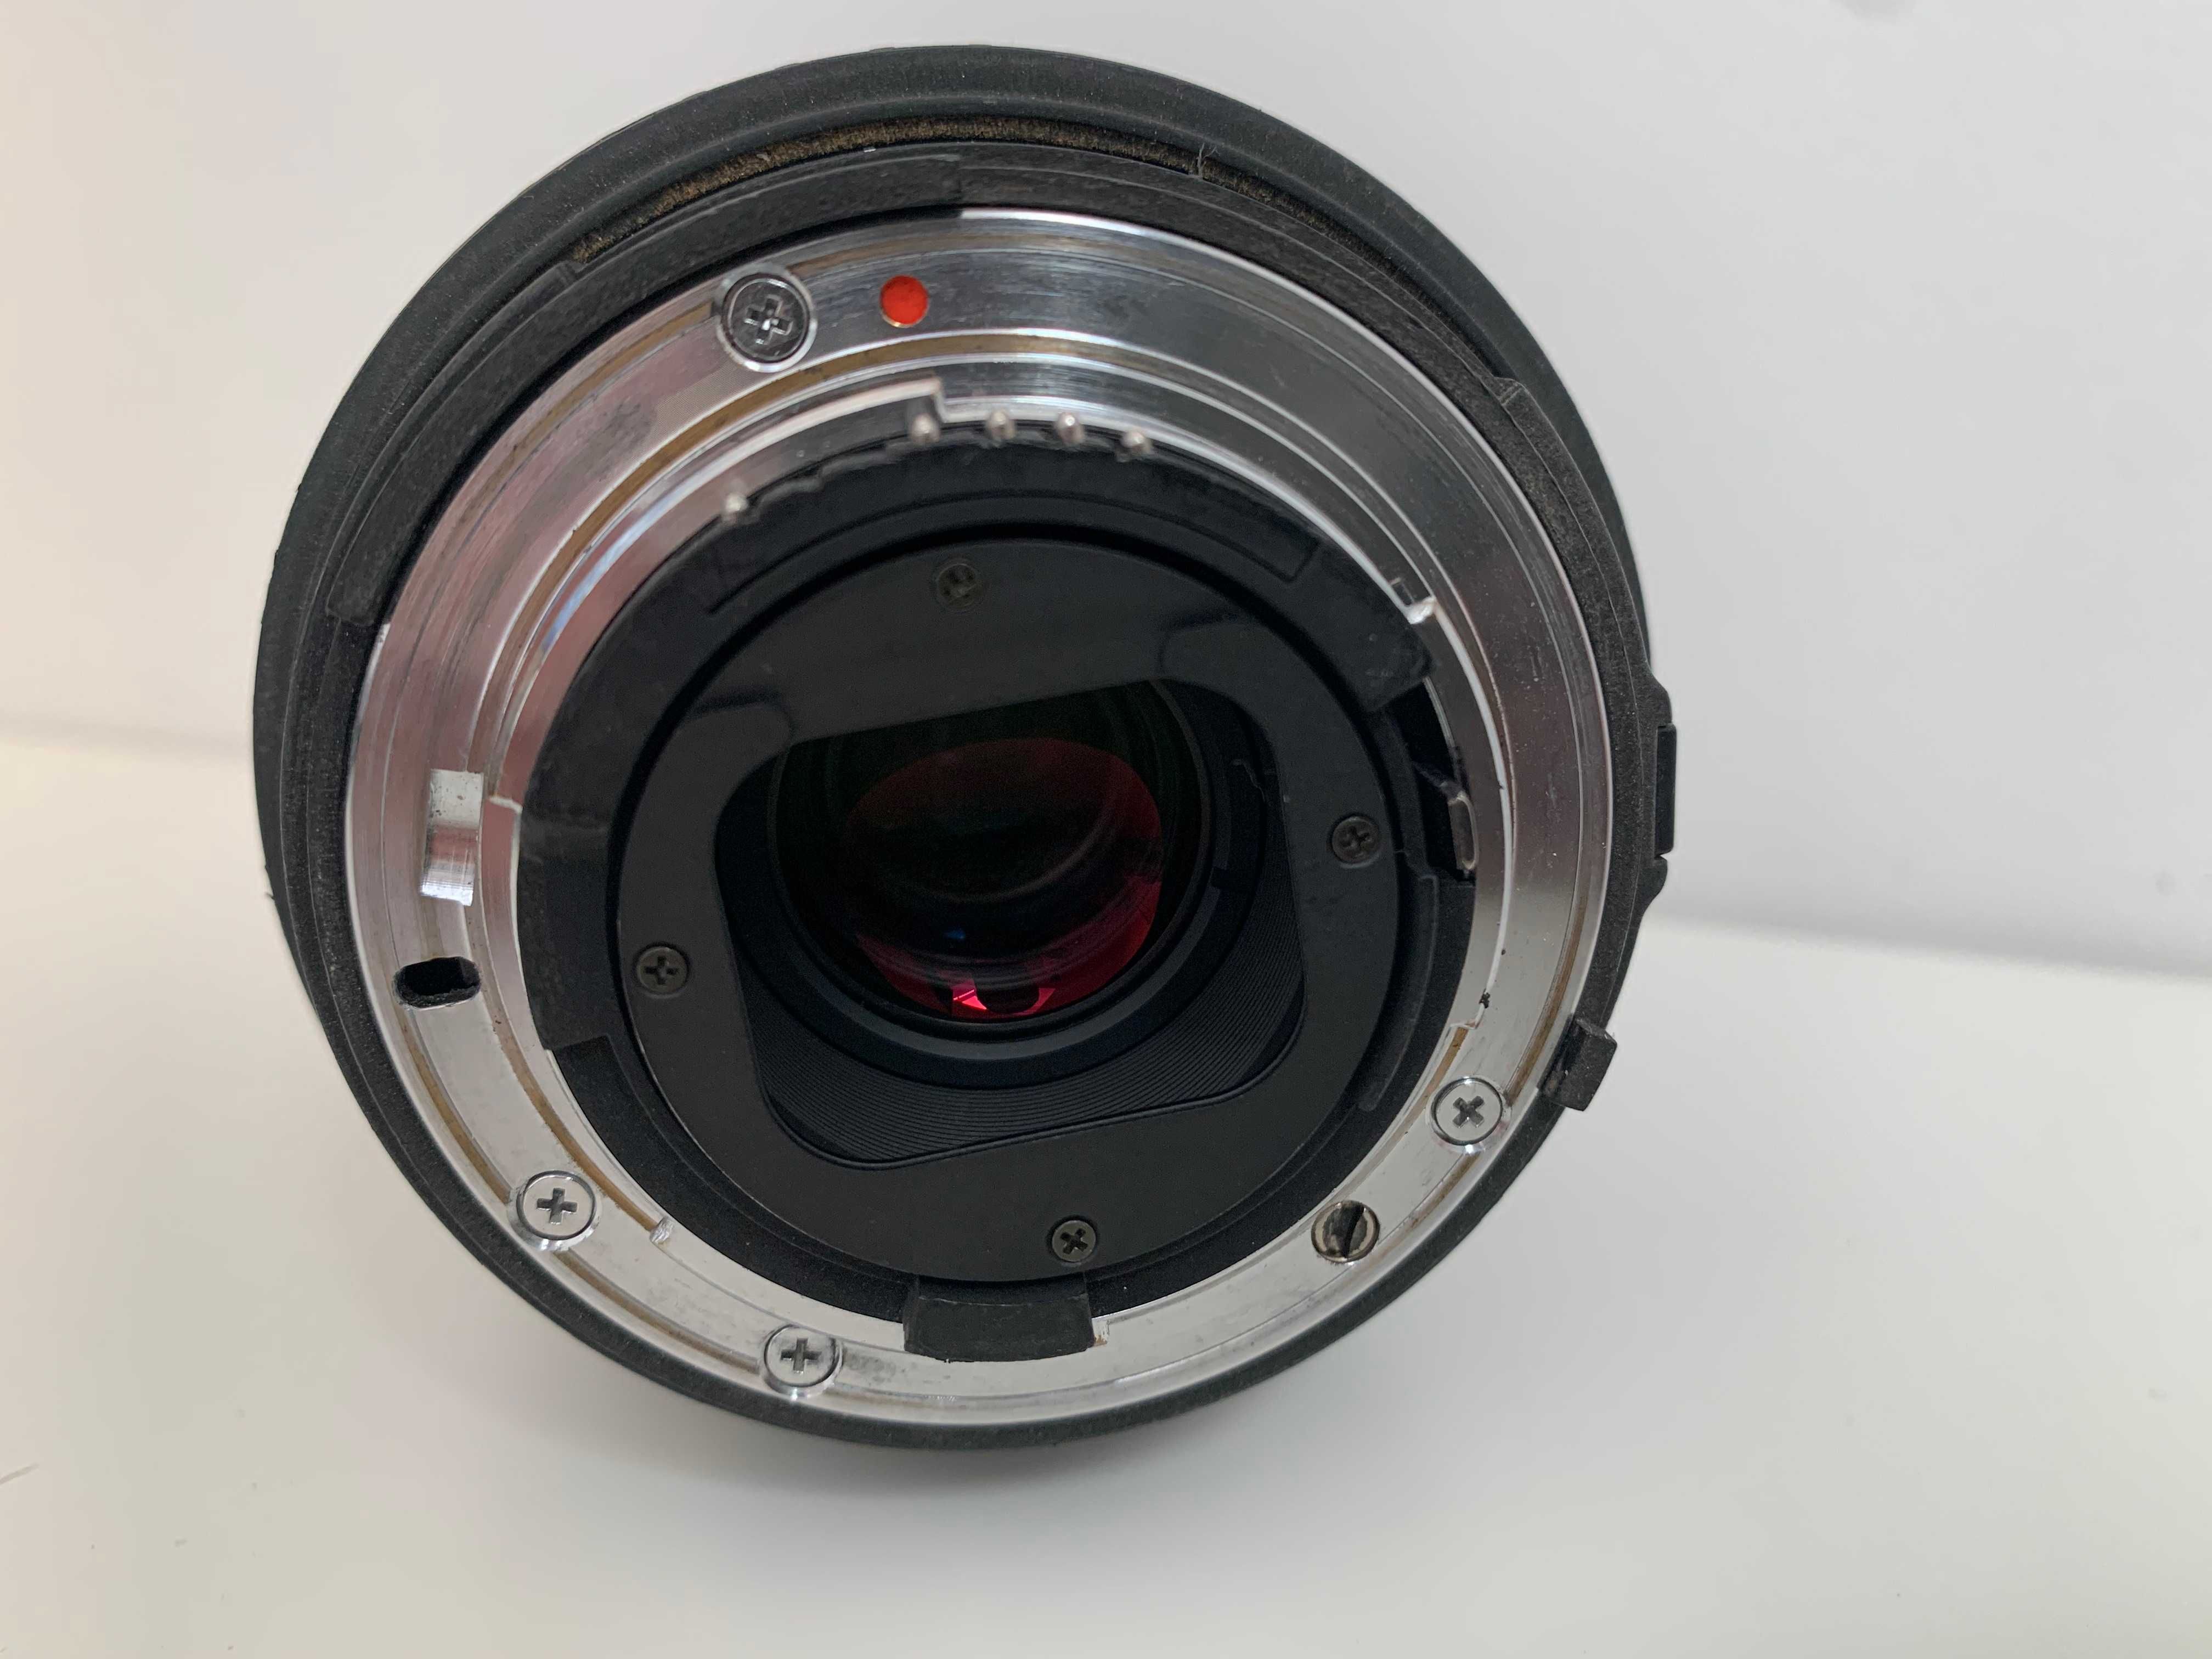 Ultra-szeroki obiektyw Sigma 15-30mm 1:3.5-4.5 AF Nikon F pełna klatka